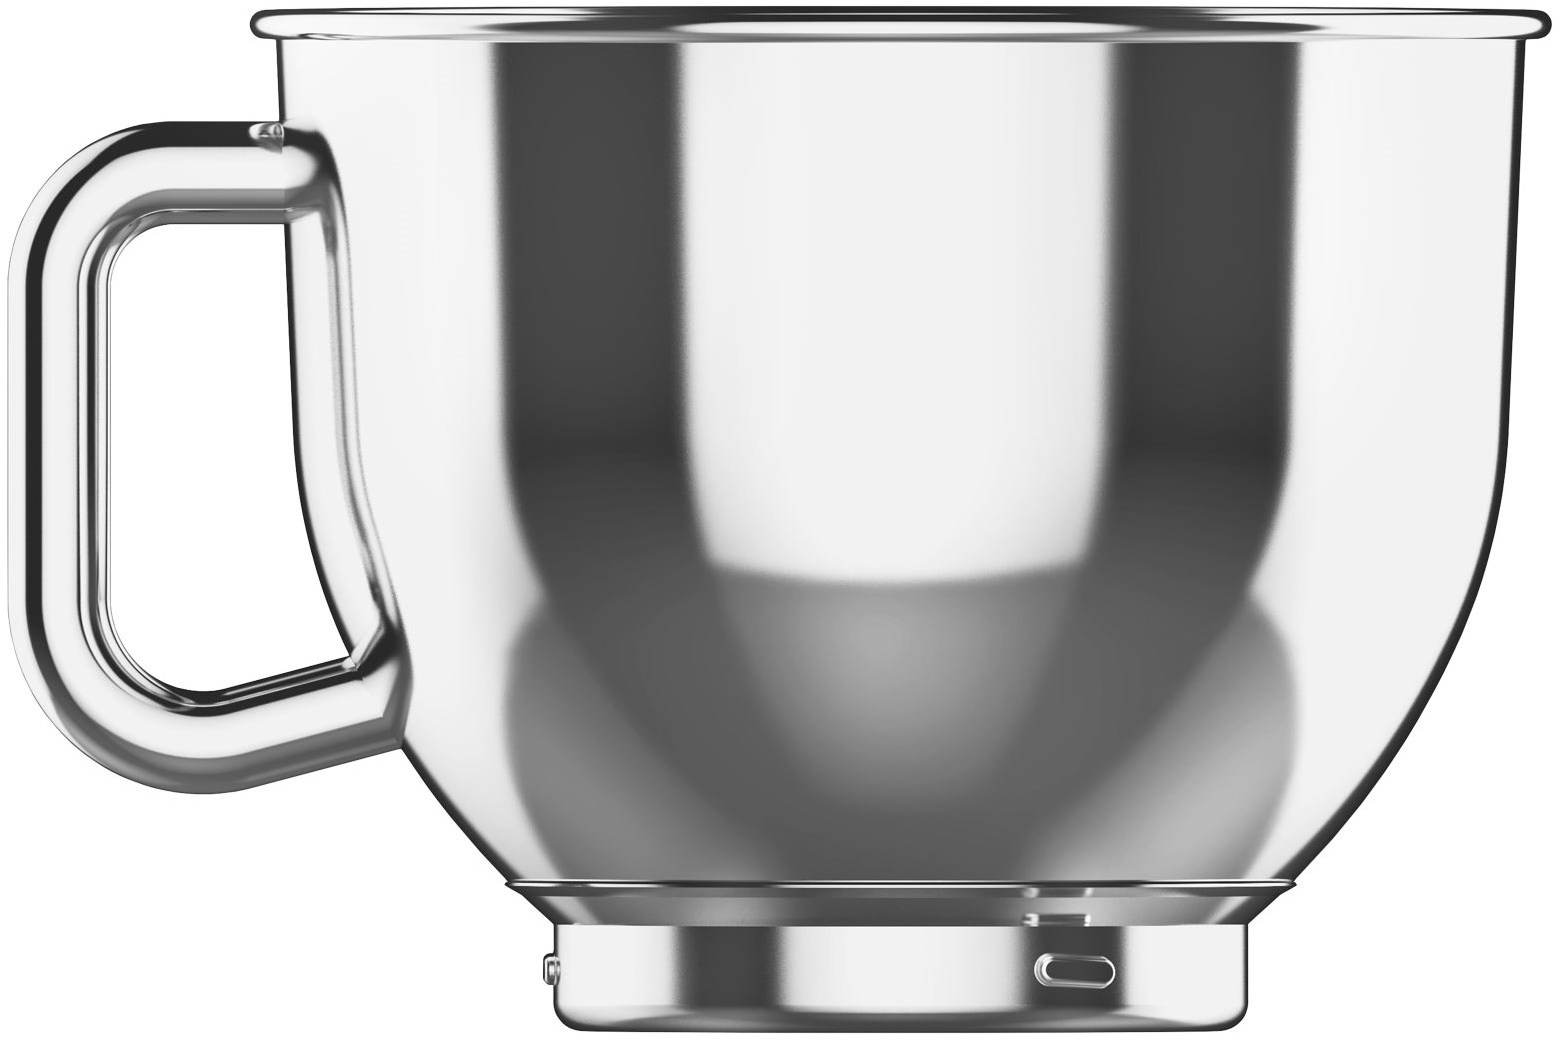 GASTROBACK 40977 Design Küchenmaschine Advanced 600 (Rührschüsselkapazität: 5 Liter, Digital Silber Küchenmaschine Watt)